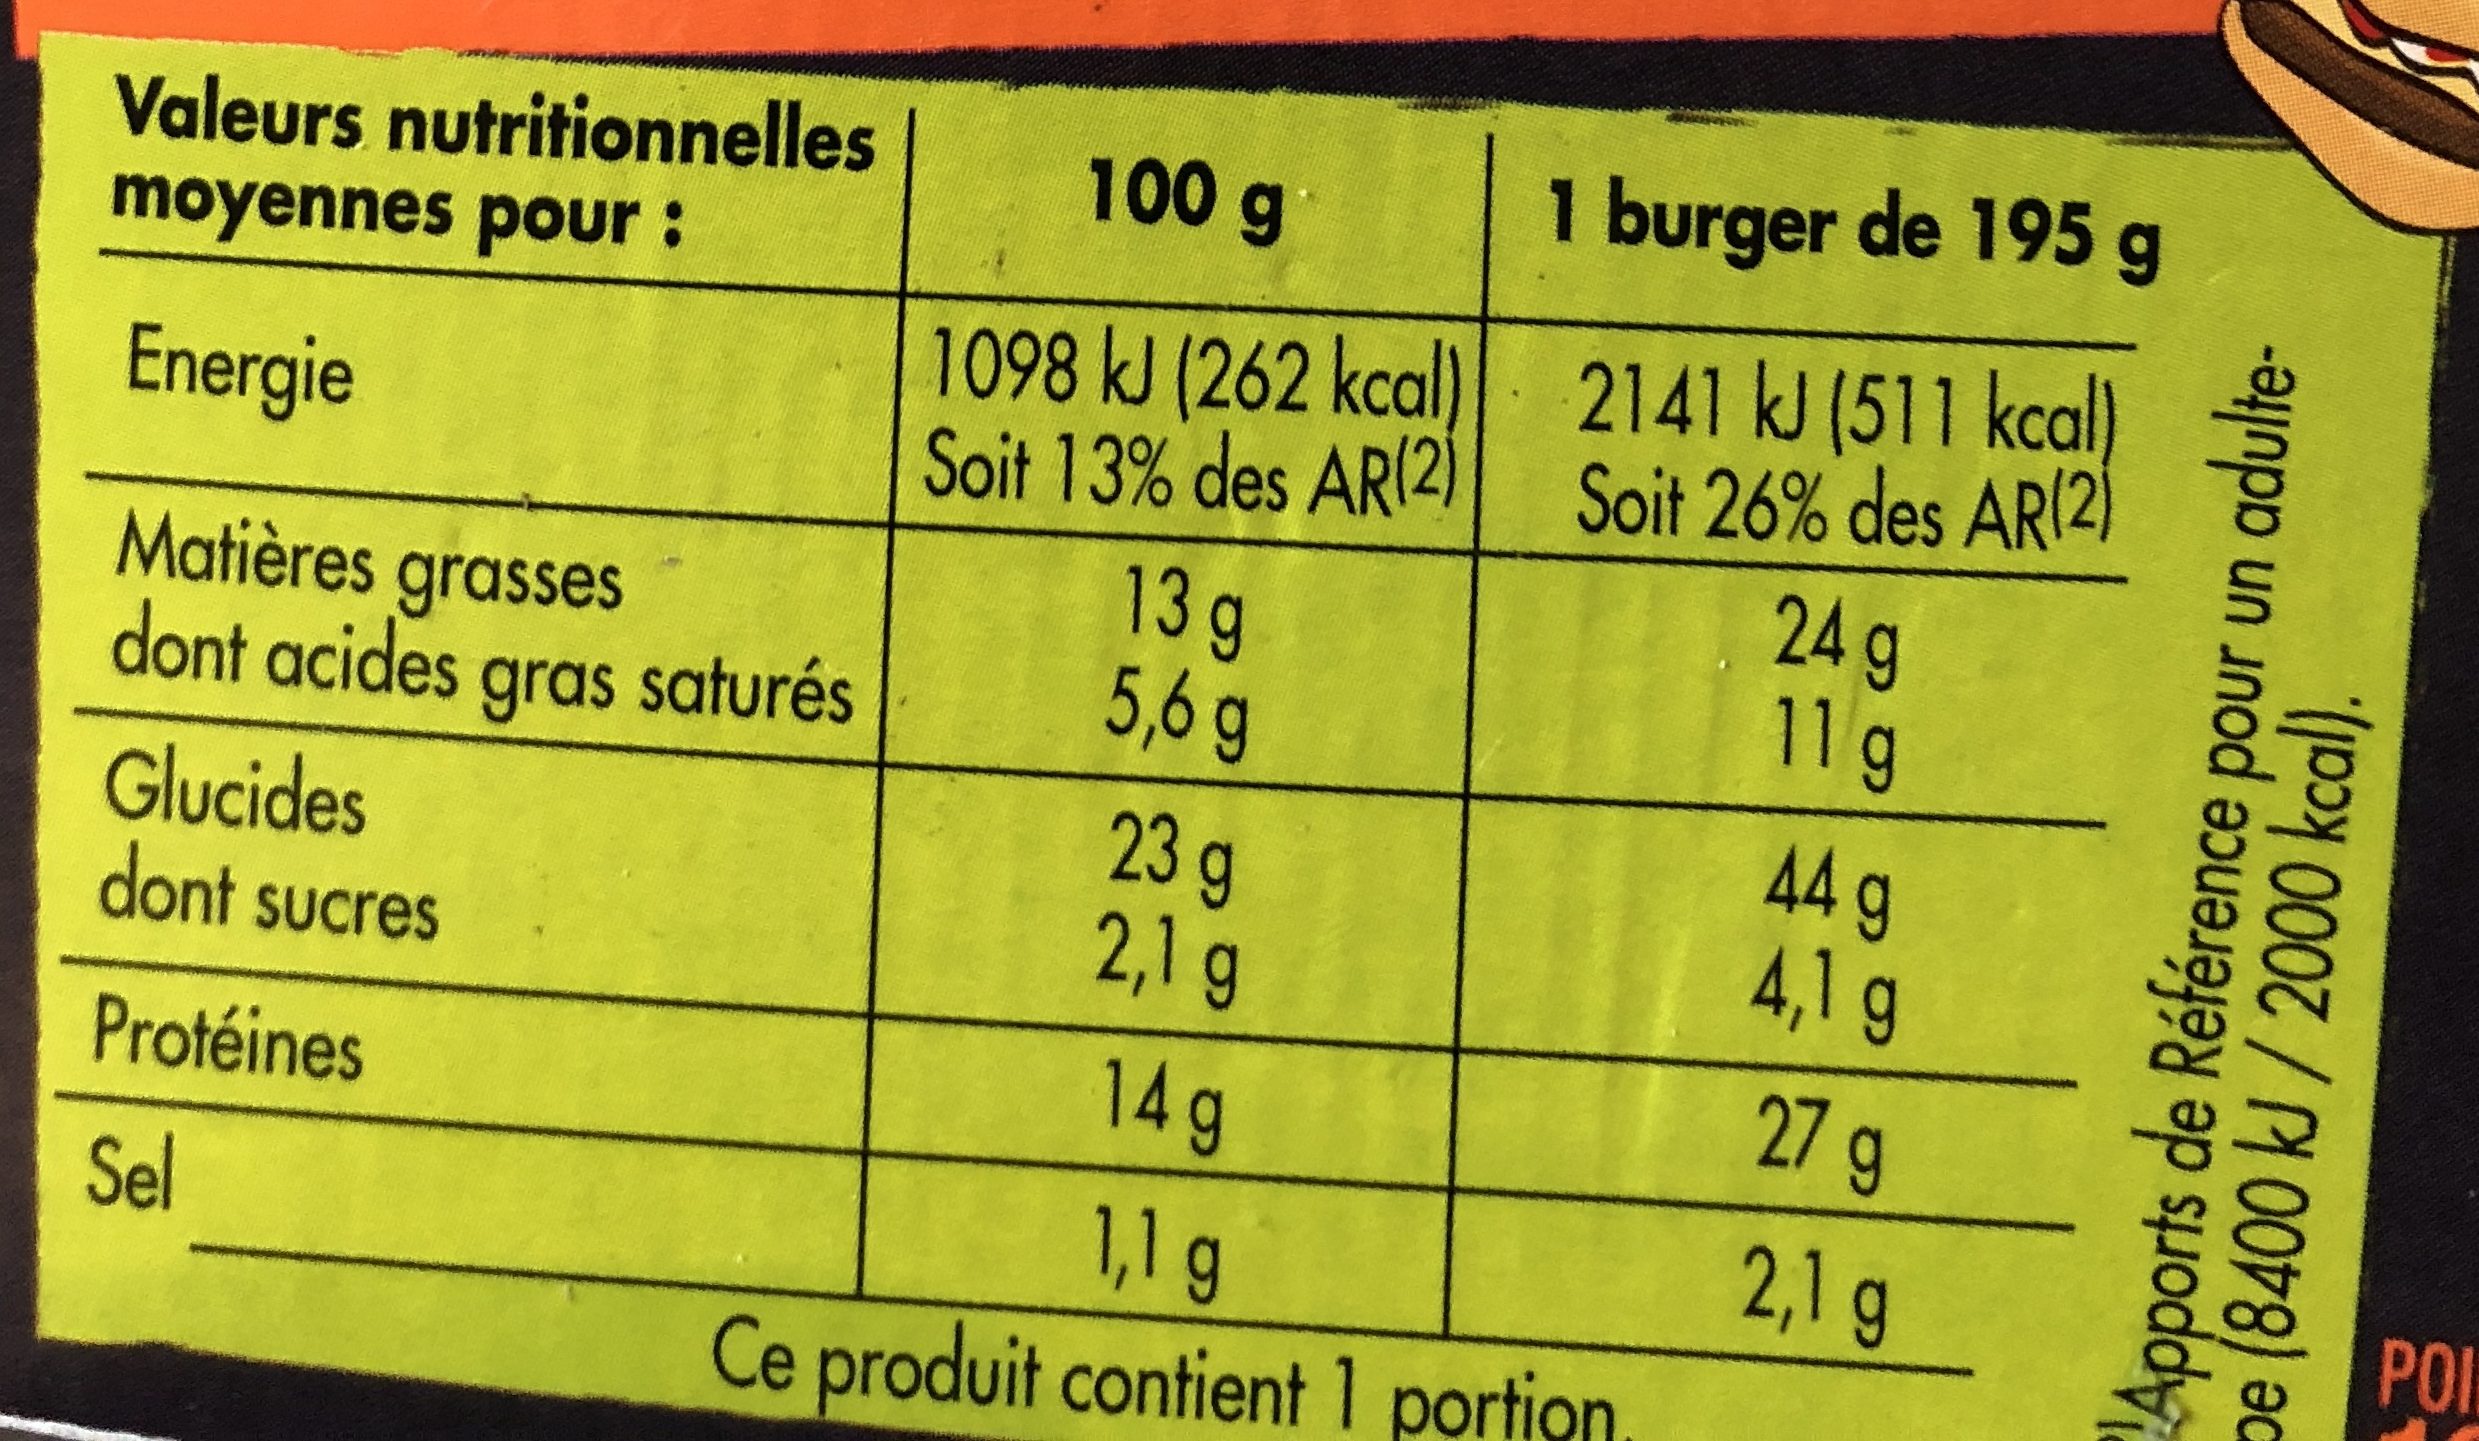 Le charolais Burger viande Charolaise sauce au poivre, 195 g - Voedingswaarden - fr